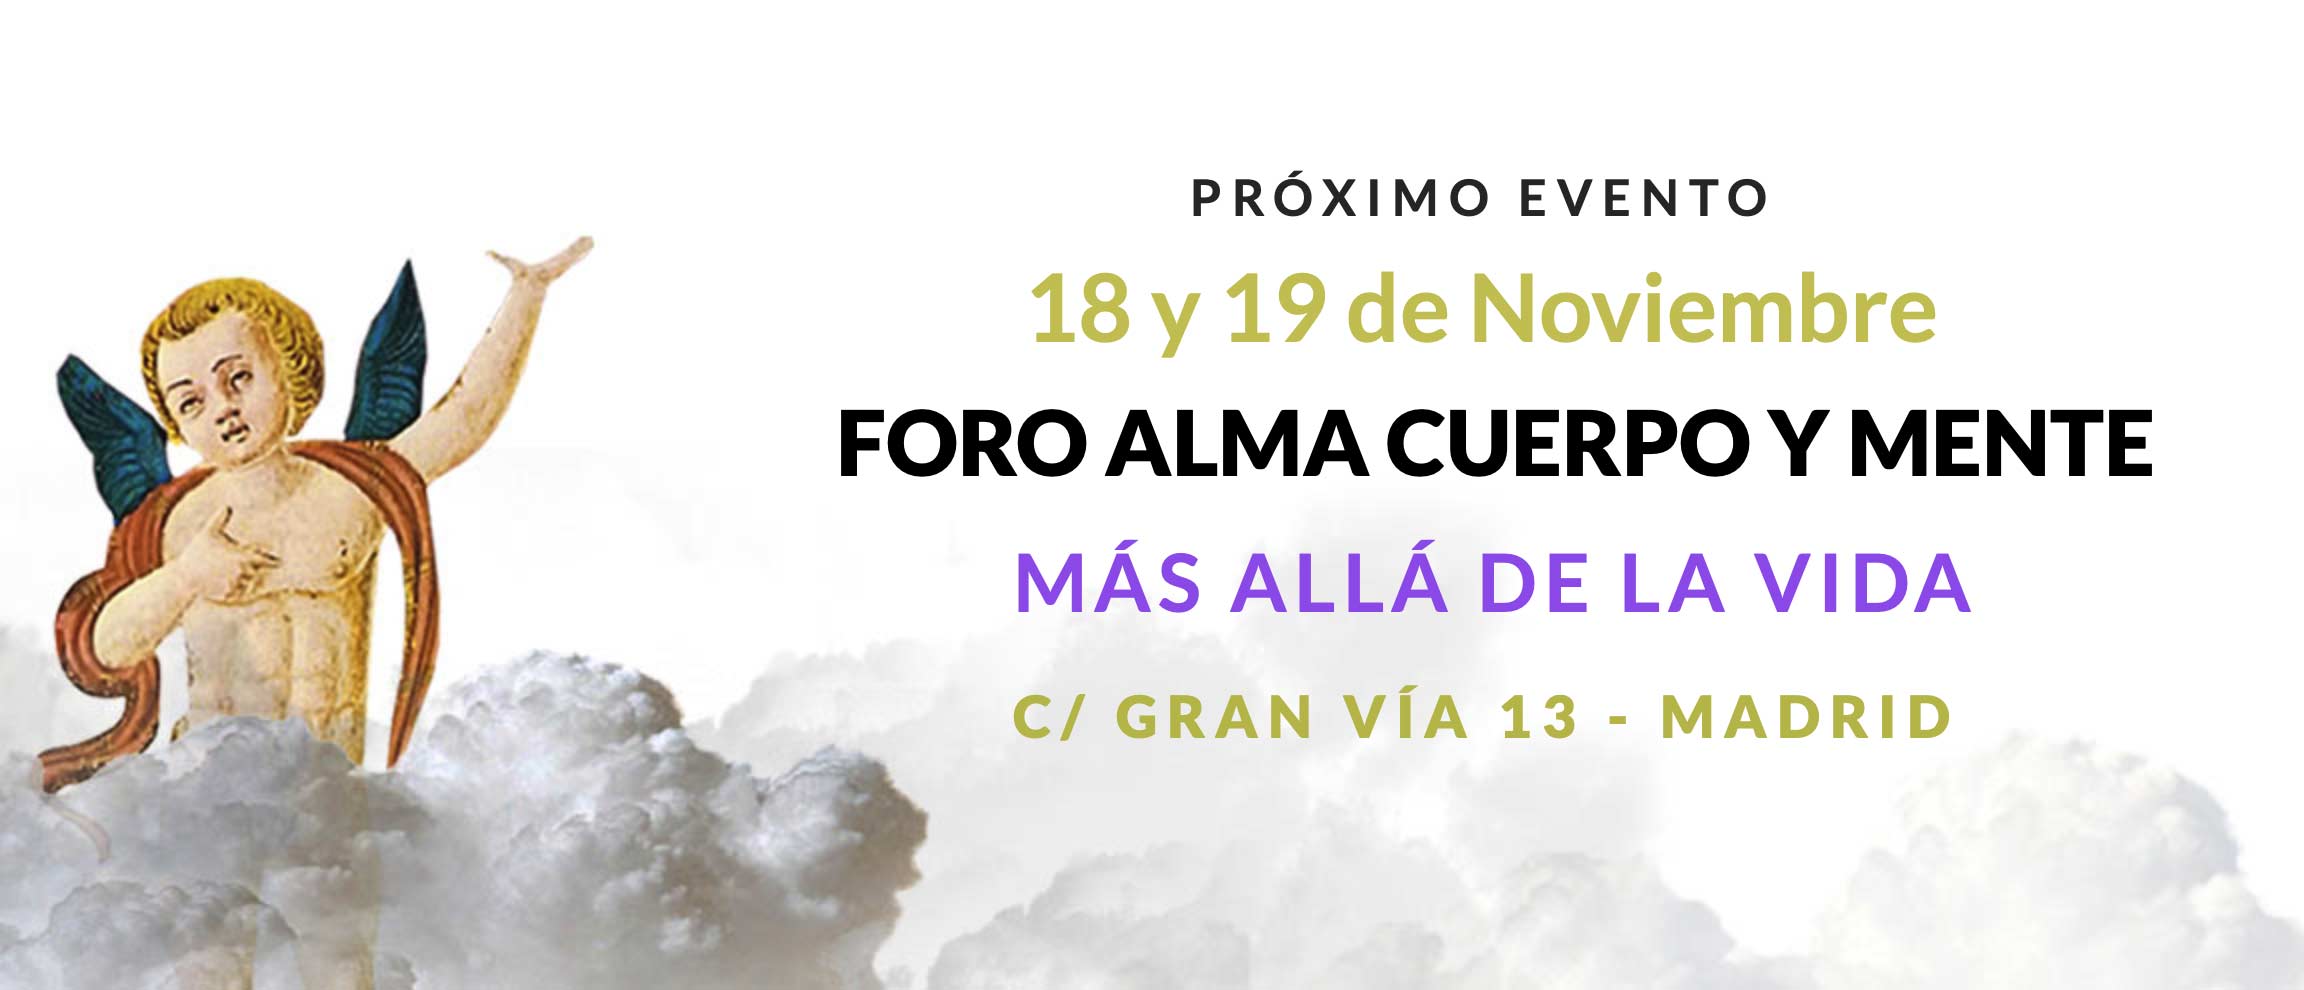 El 18 y 19 de Noviembre en C/ Gran Vía 13, Madrid estará el Foro Alma Cuerpo y Mente especial mediumnidad, Vida más allá. ¡No te lo puedes perder! Eventos de Espiritualidad